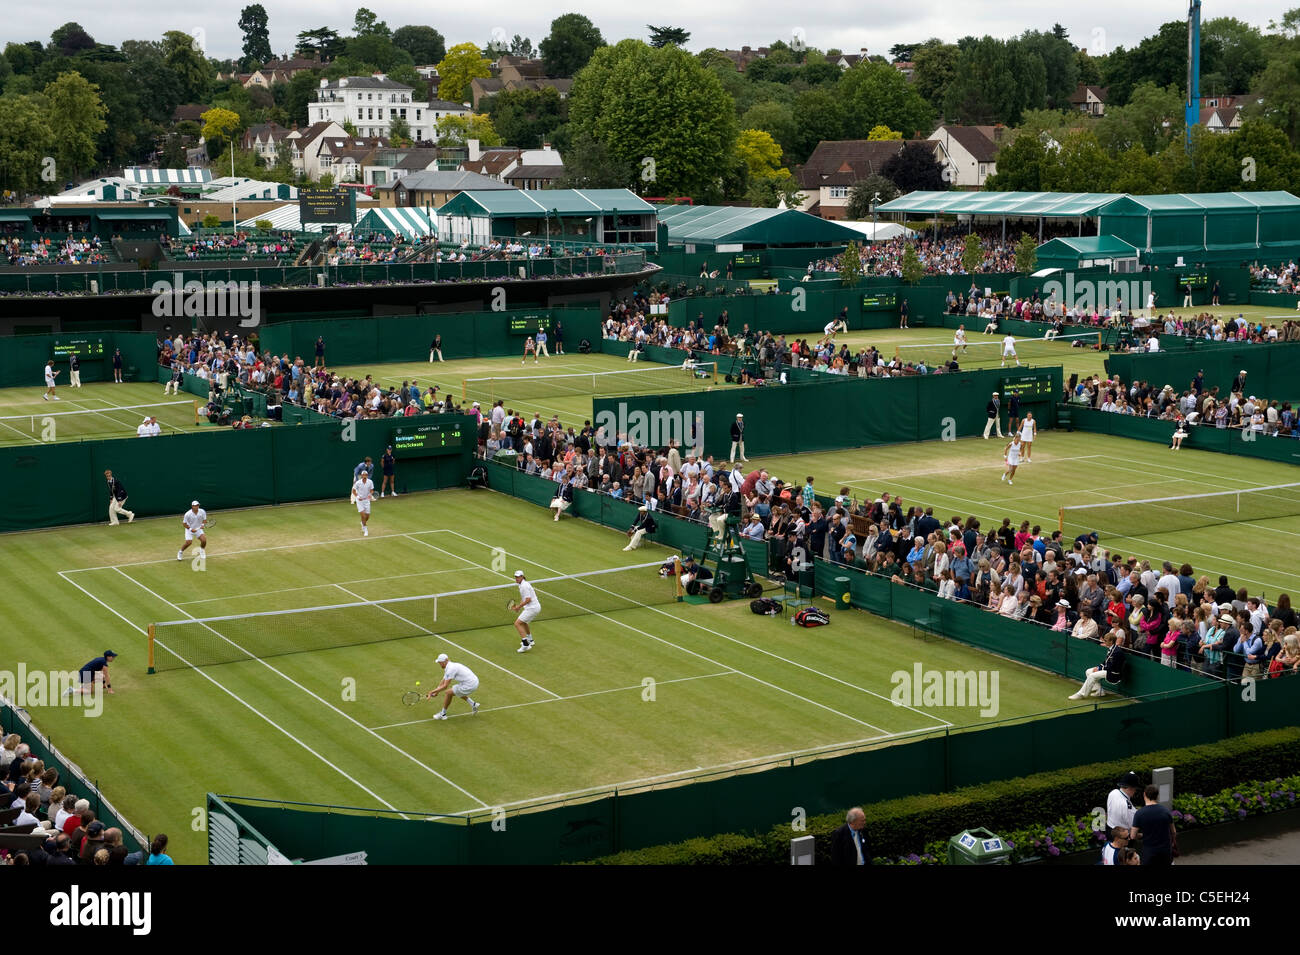 Vue sur cour 7 et 6 au cours de l'édition 2011 des Championnats de tennis de Wimbledon Banque D'Images